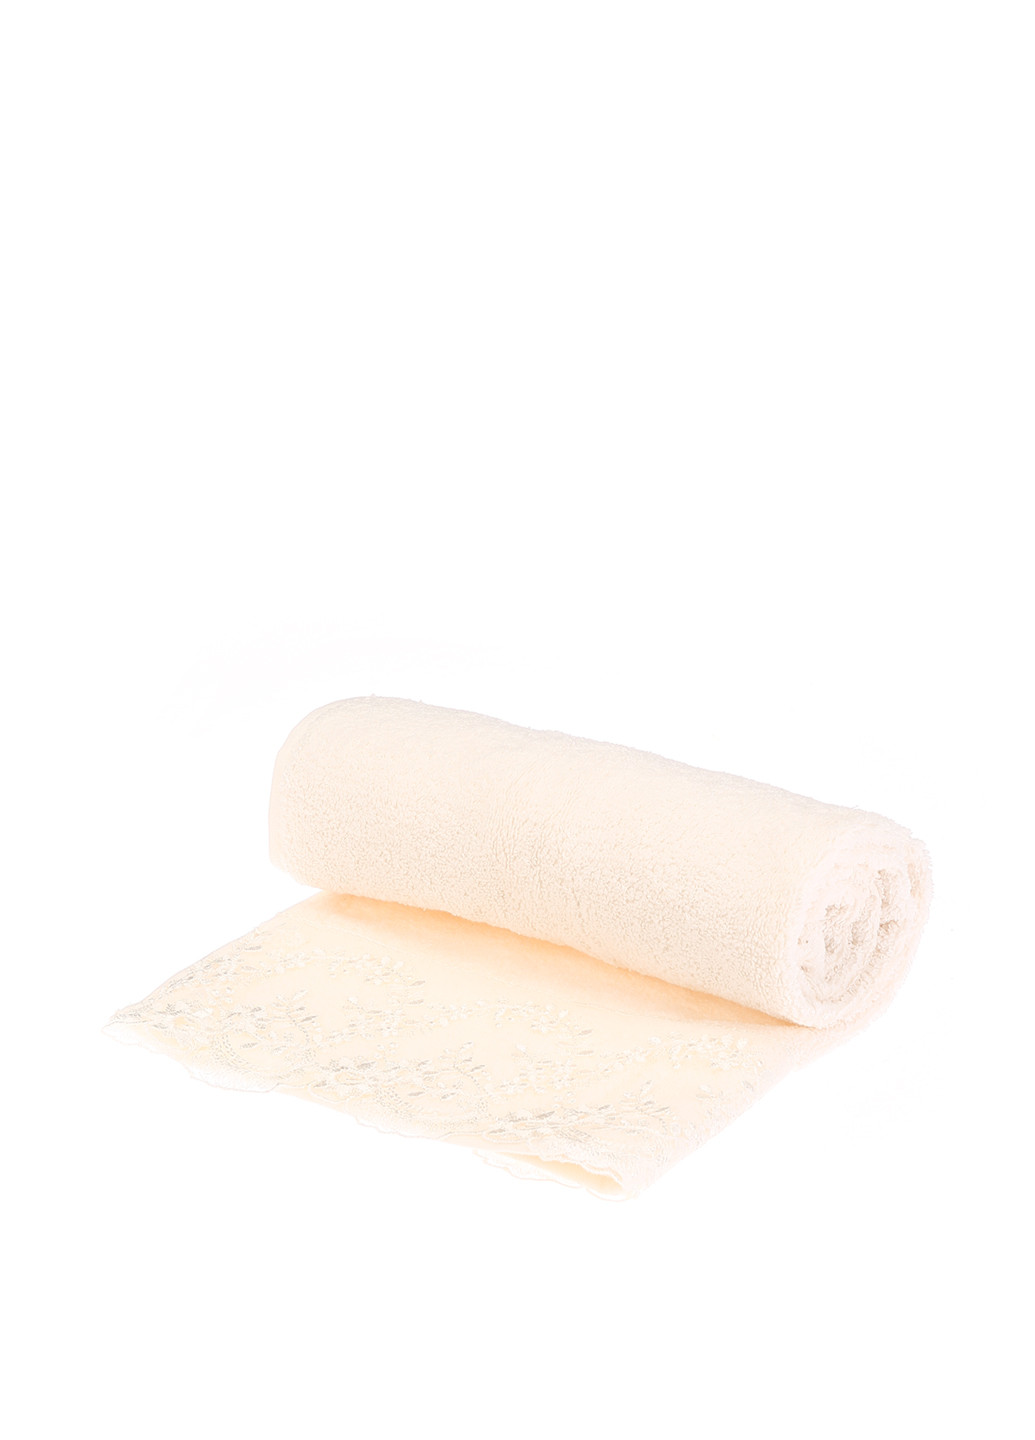 Moda Paris полотенце однотонный белый производство - Турция